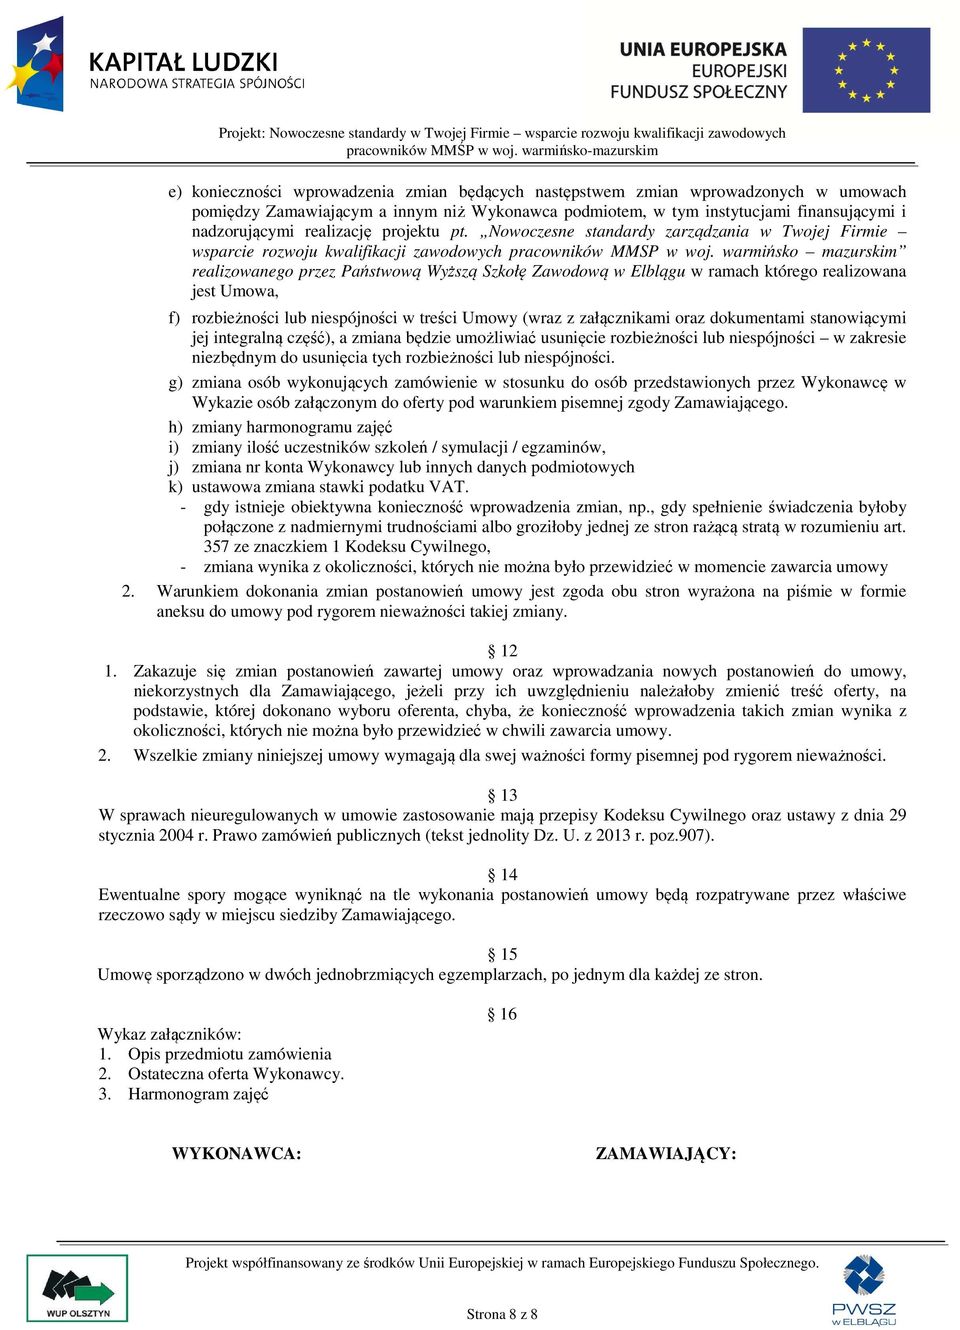 warmińsko mazurskim realizowanego przez Państwową Wyższą Szkołę Zawodową w Elblągu w ramach którego realizowana jest Umowa, f) rozbieżności lub niespójności w treści Umowy (wraz z załącznikami oraz